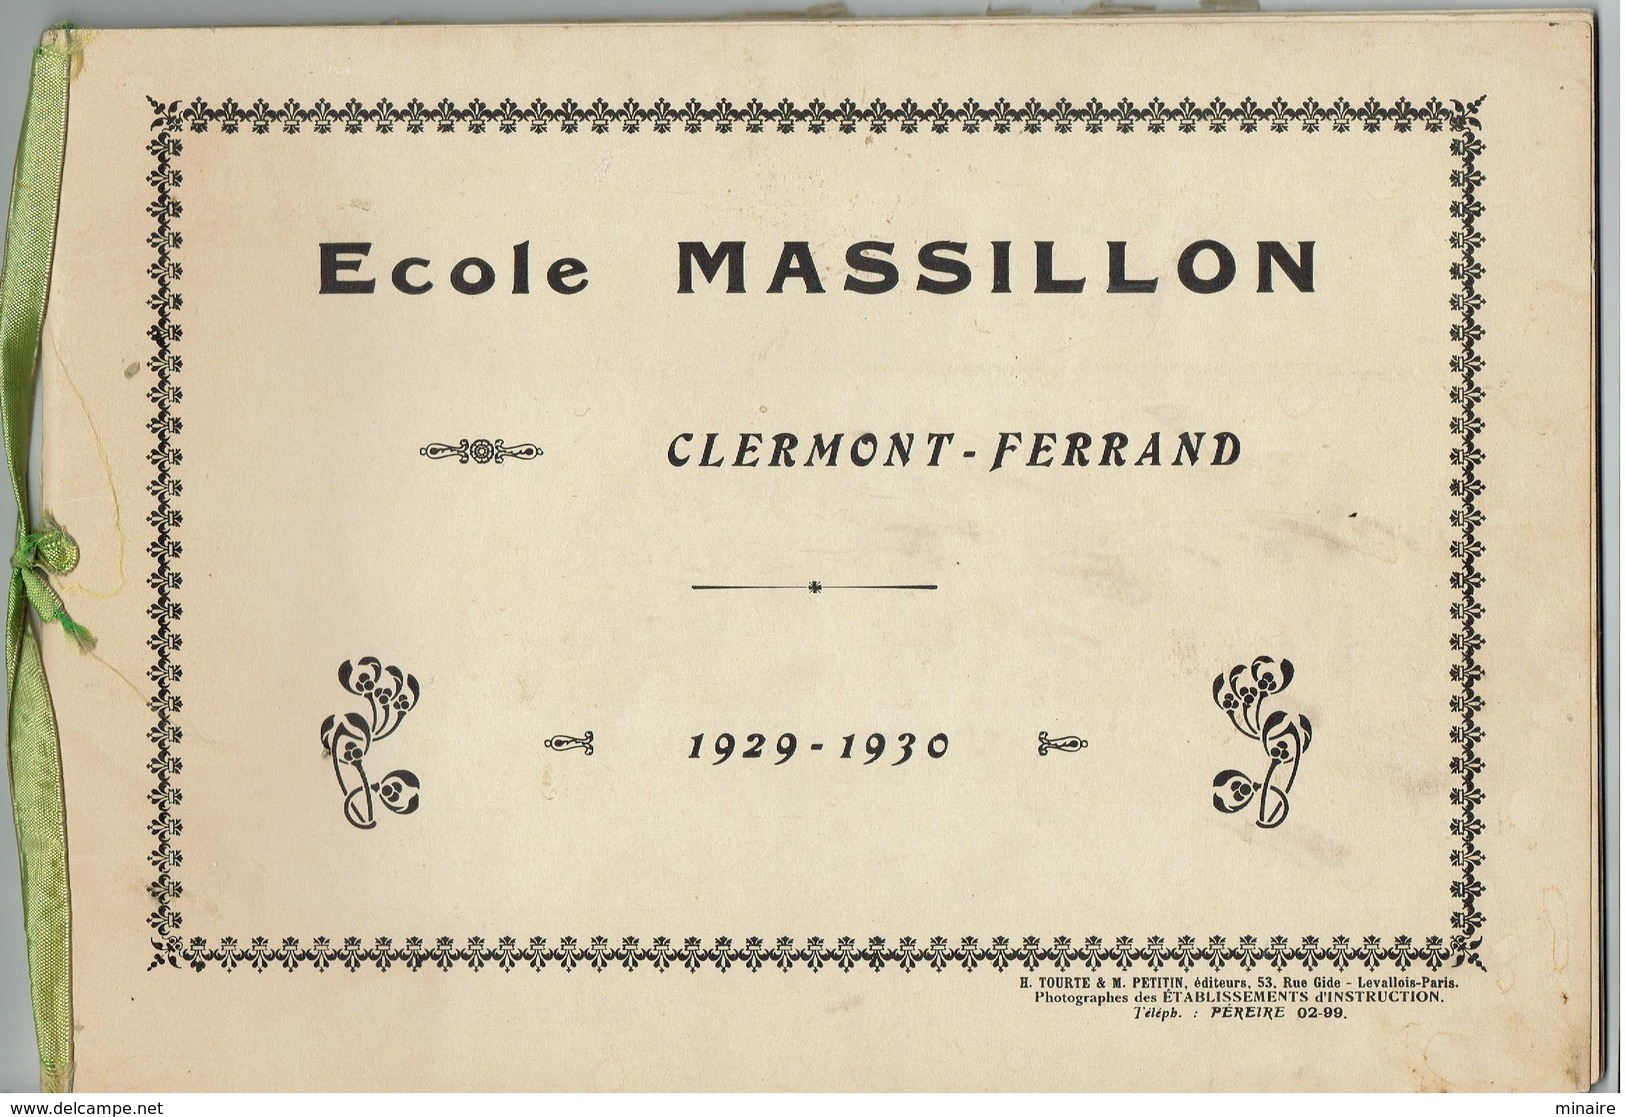 CLERMONT FERRAND - Collège Massillon Album Relié /année 1929/1930 , 24 Photos Originales Format 16x 23 - Clermont Ferrand